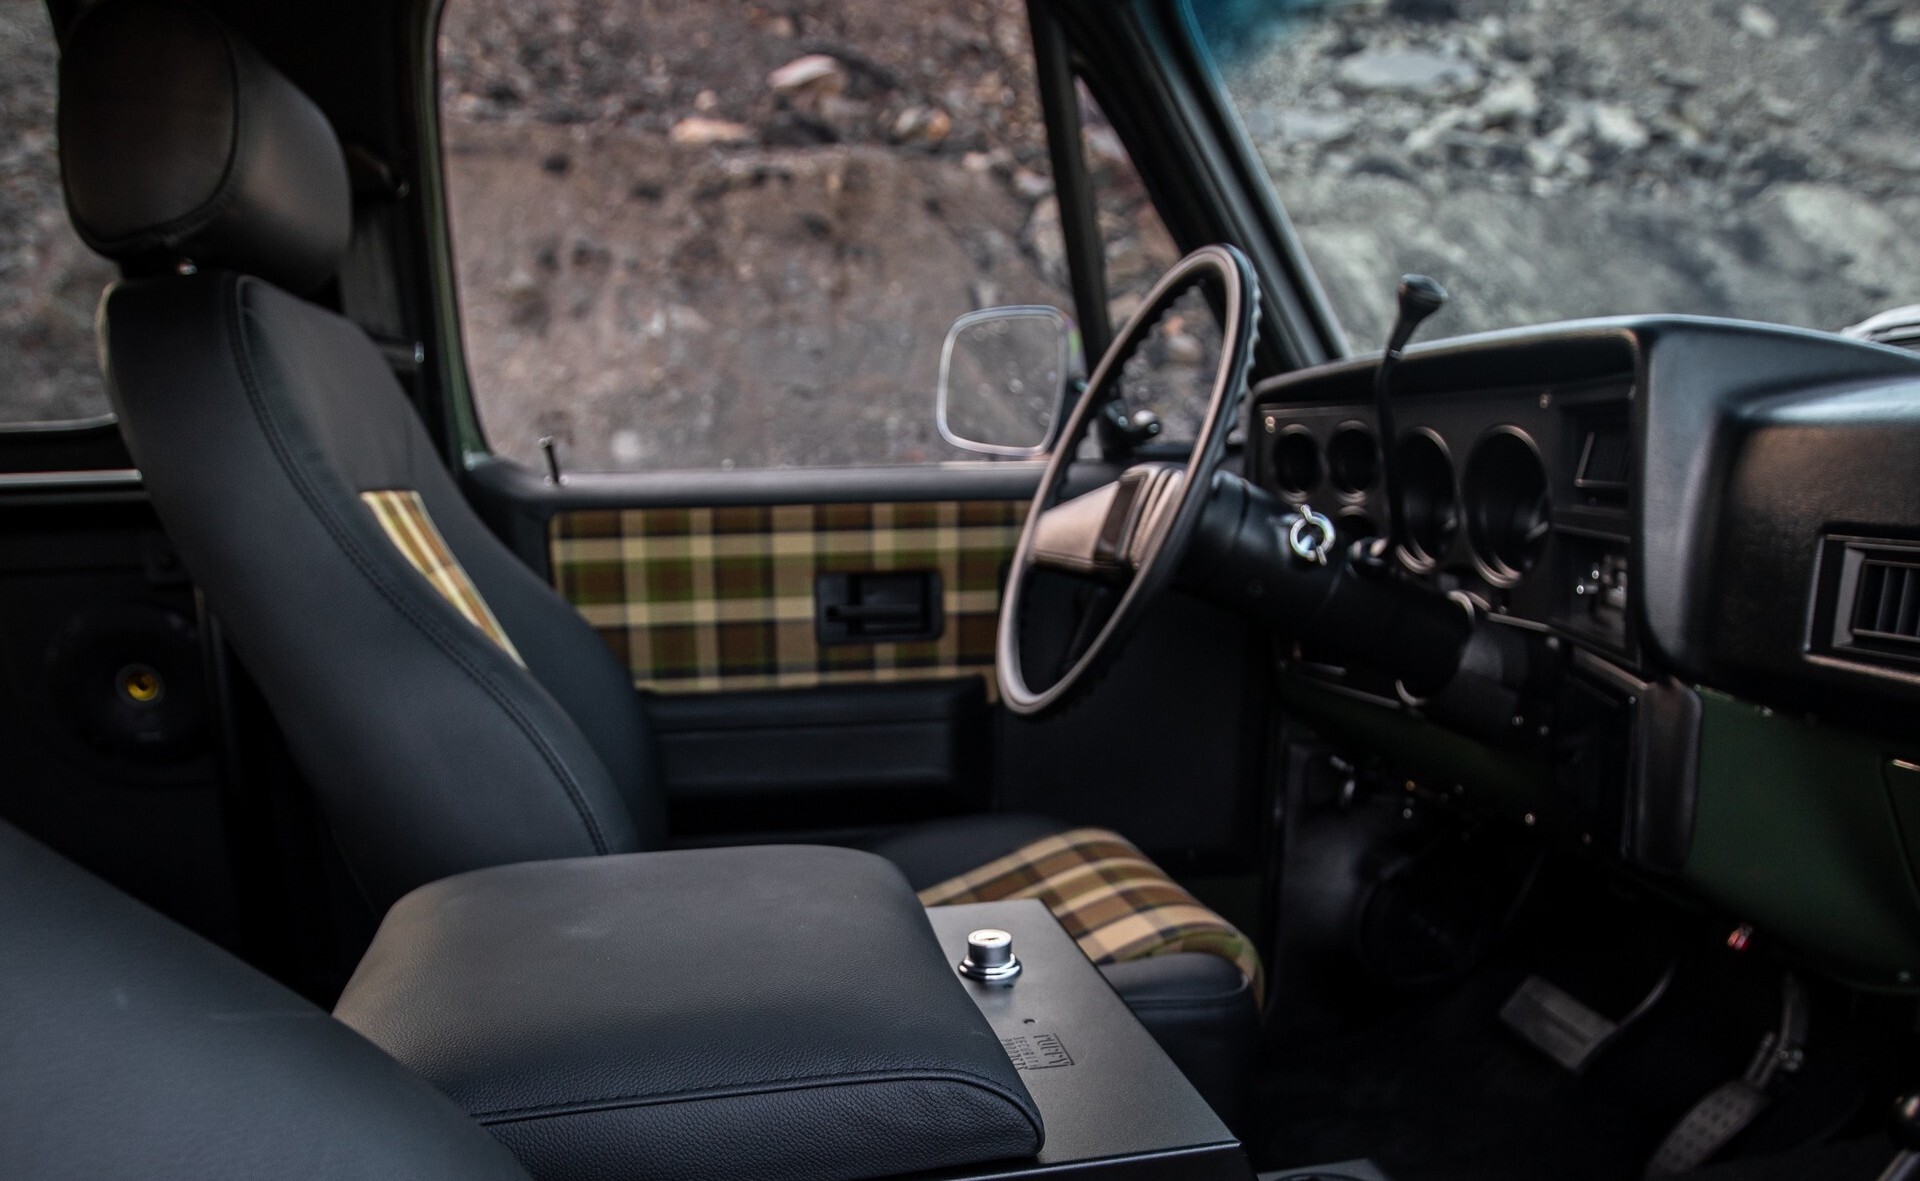 Retro Designs представила рестомод на базе Chevrolet K5 Blazer